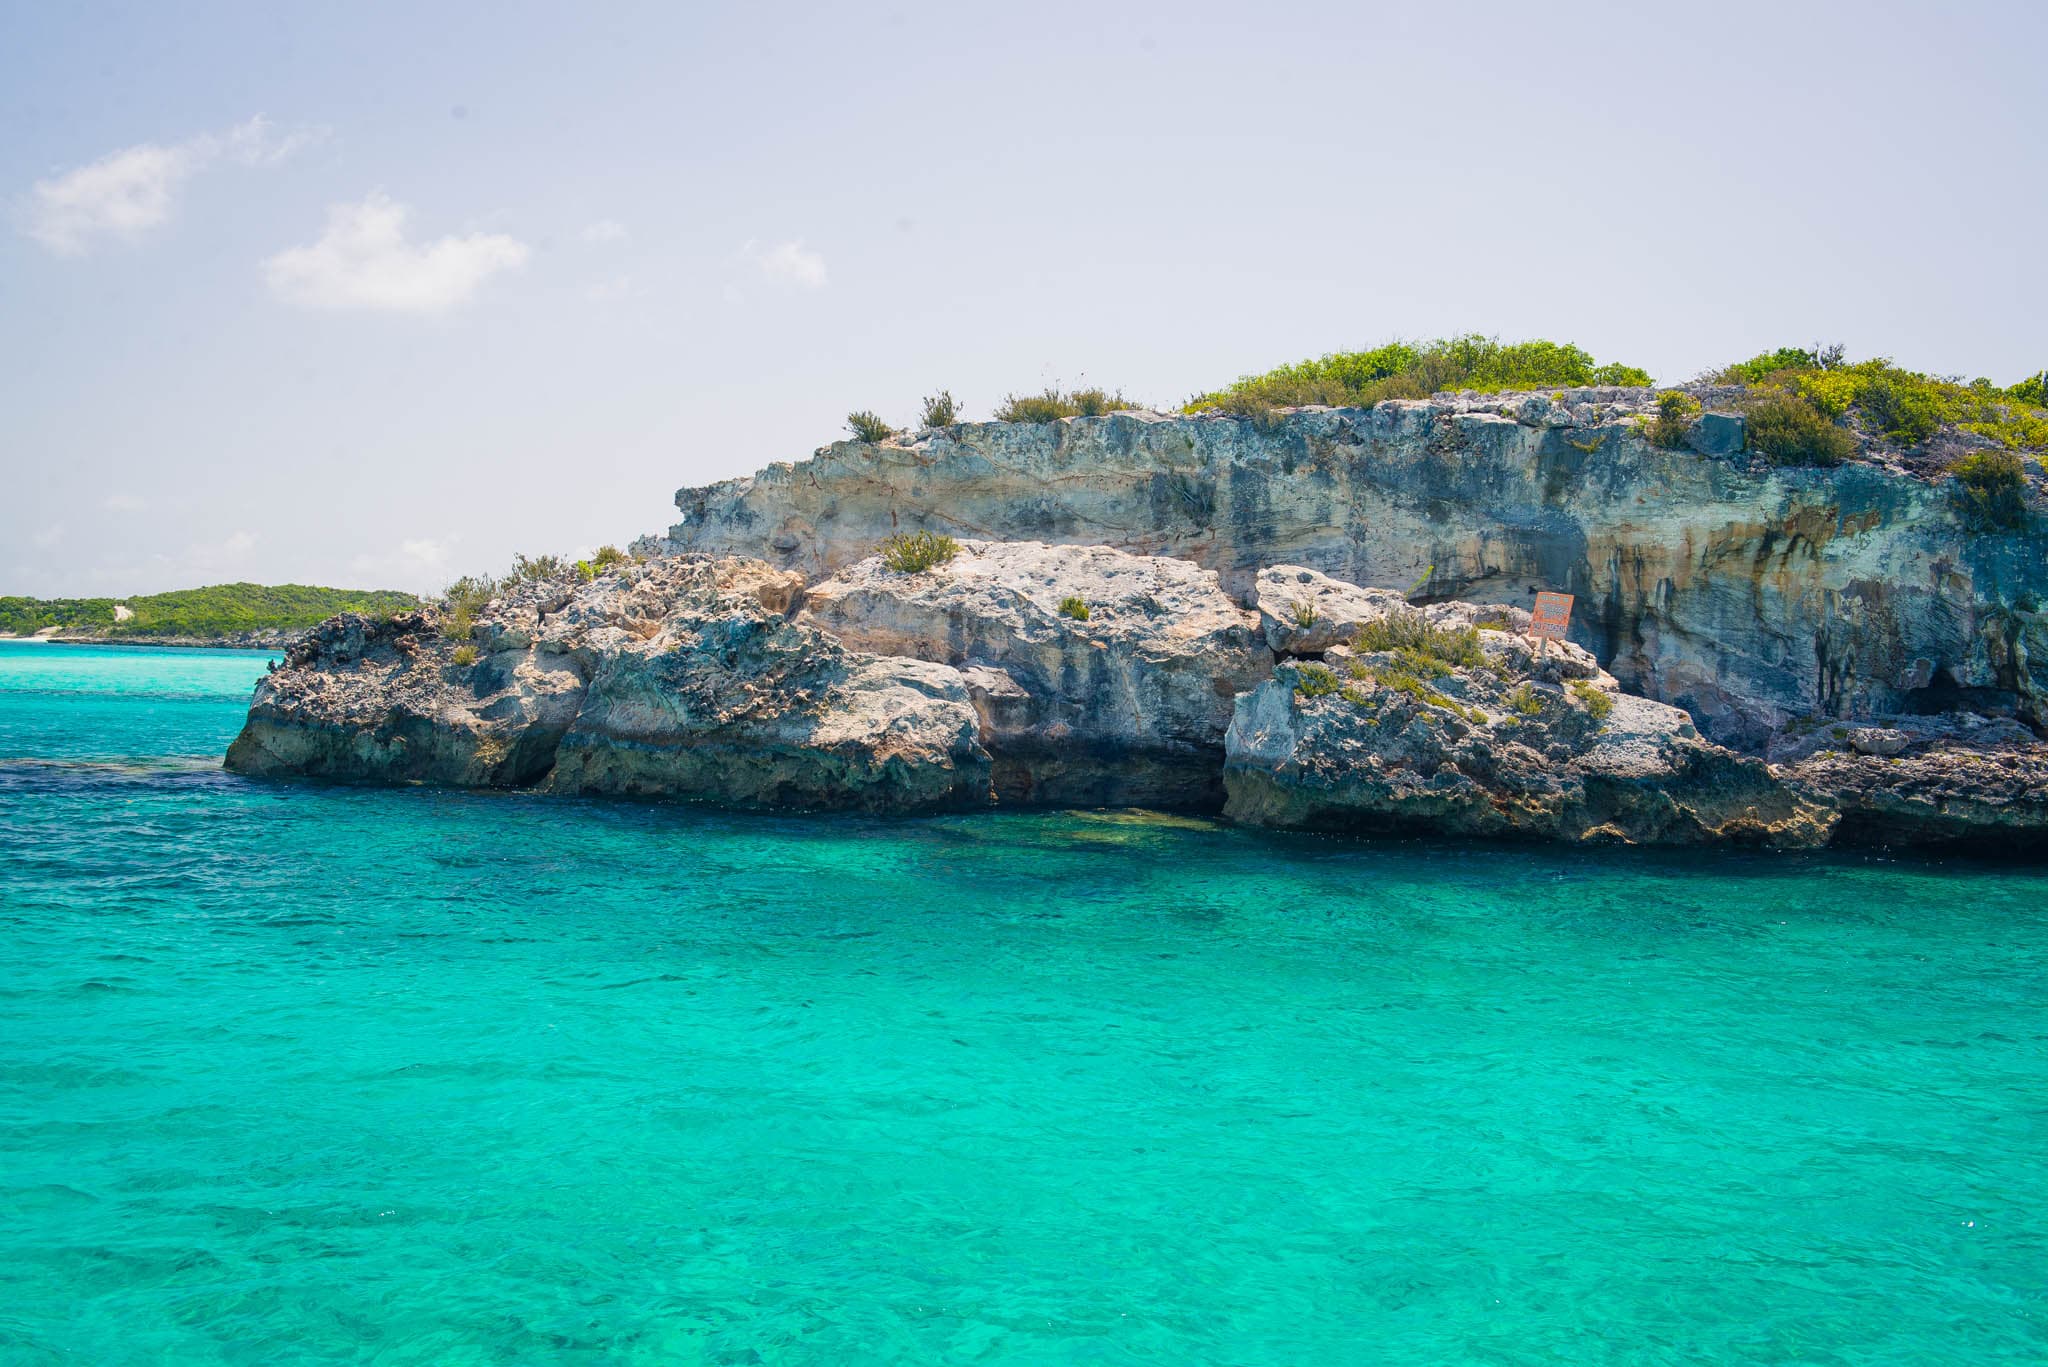 Thunderball Grotto The Bahamas by Patrick Bennett